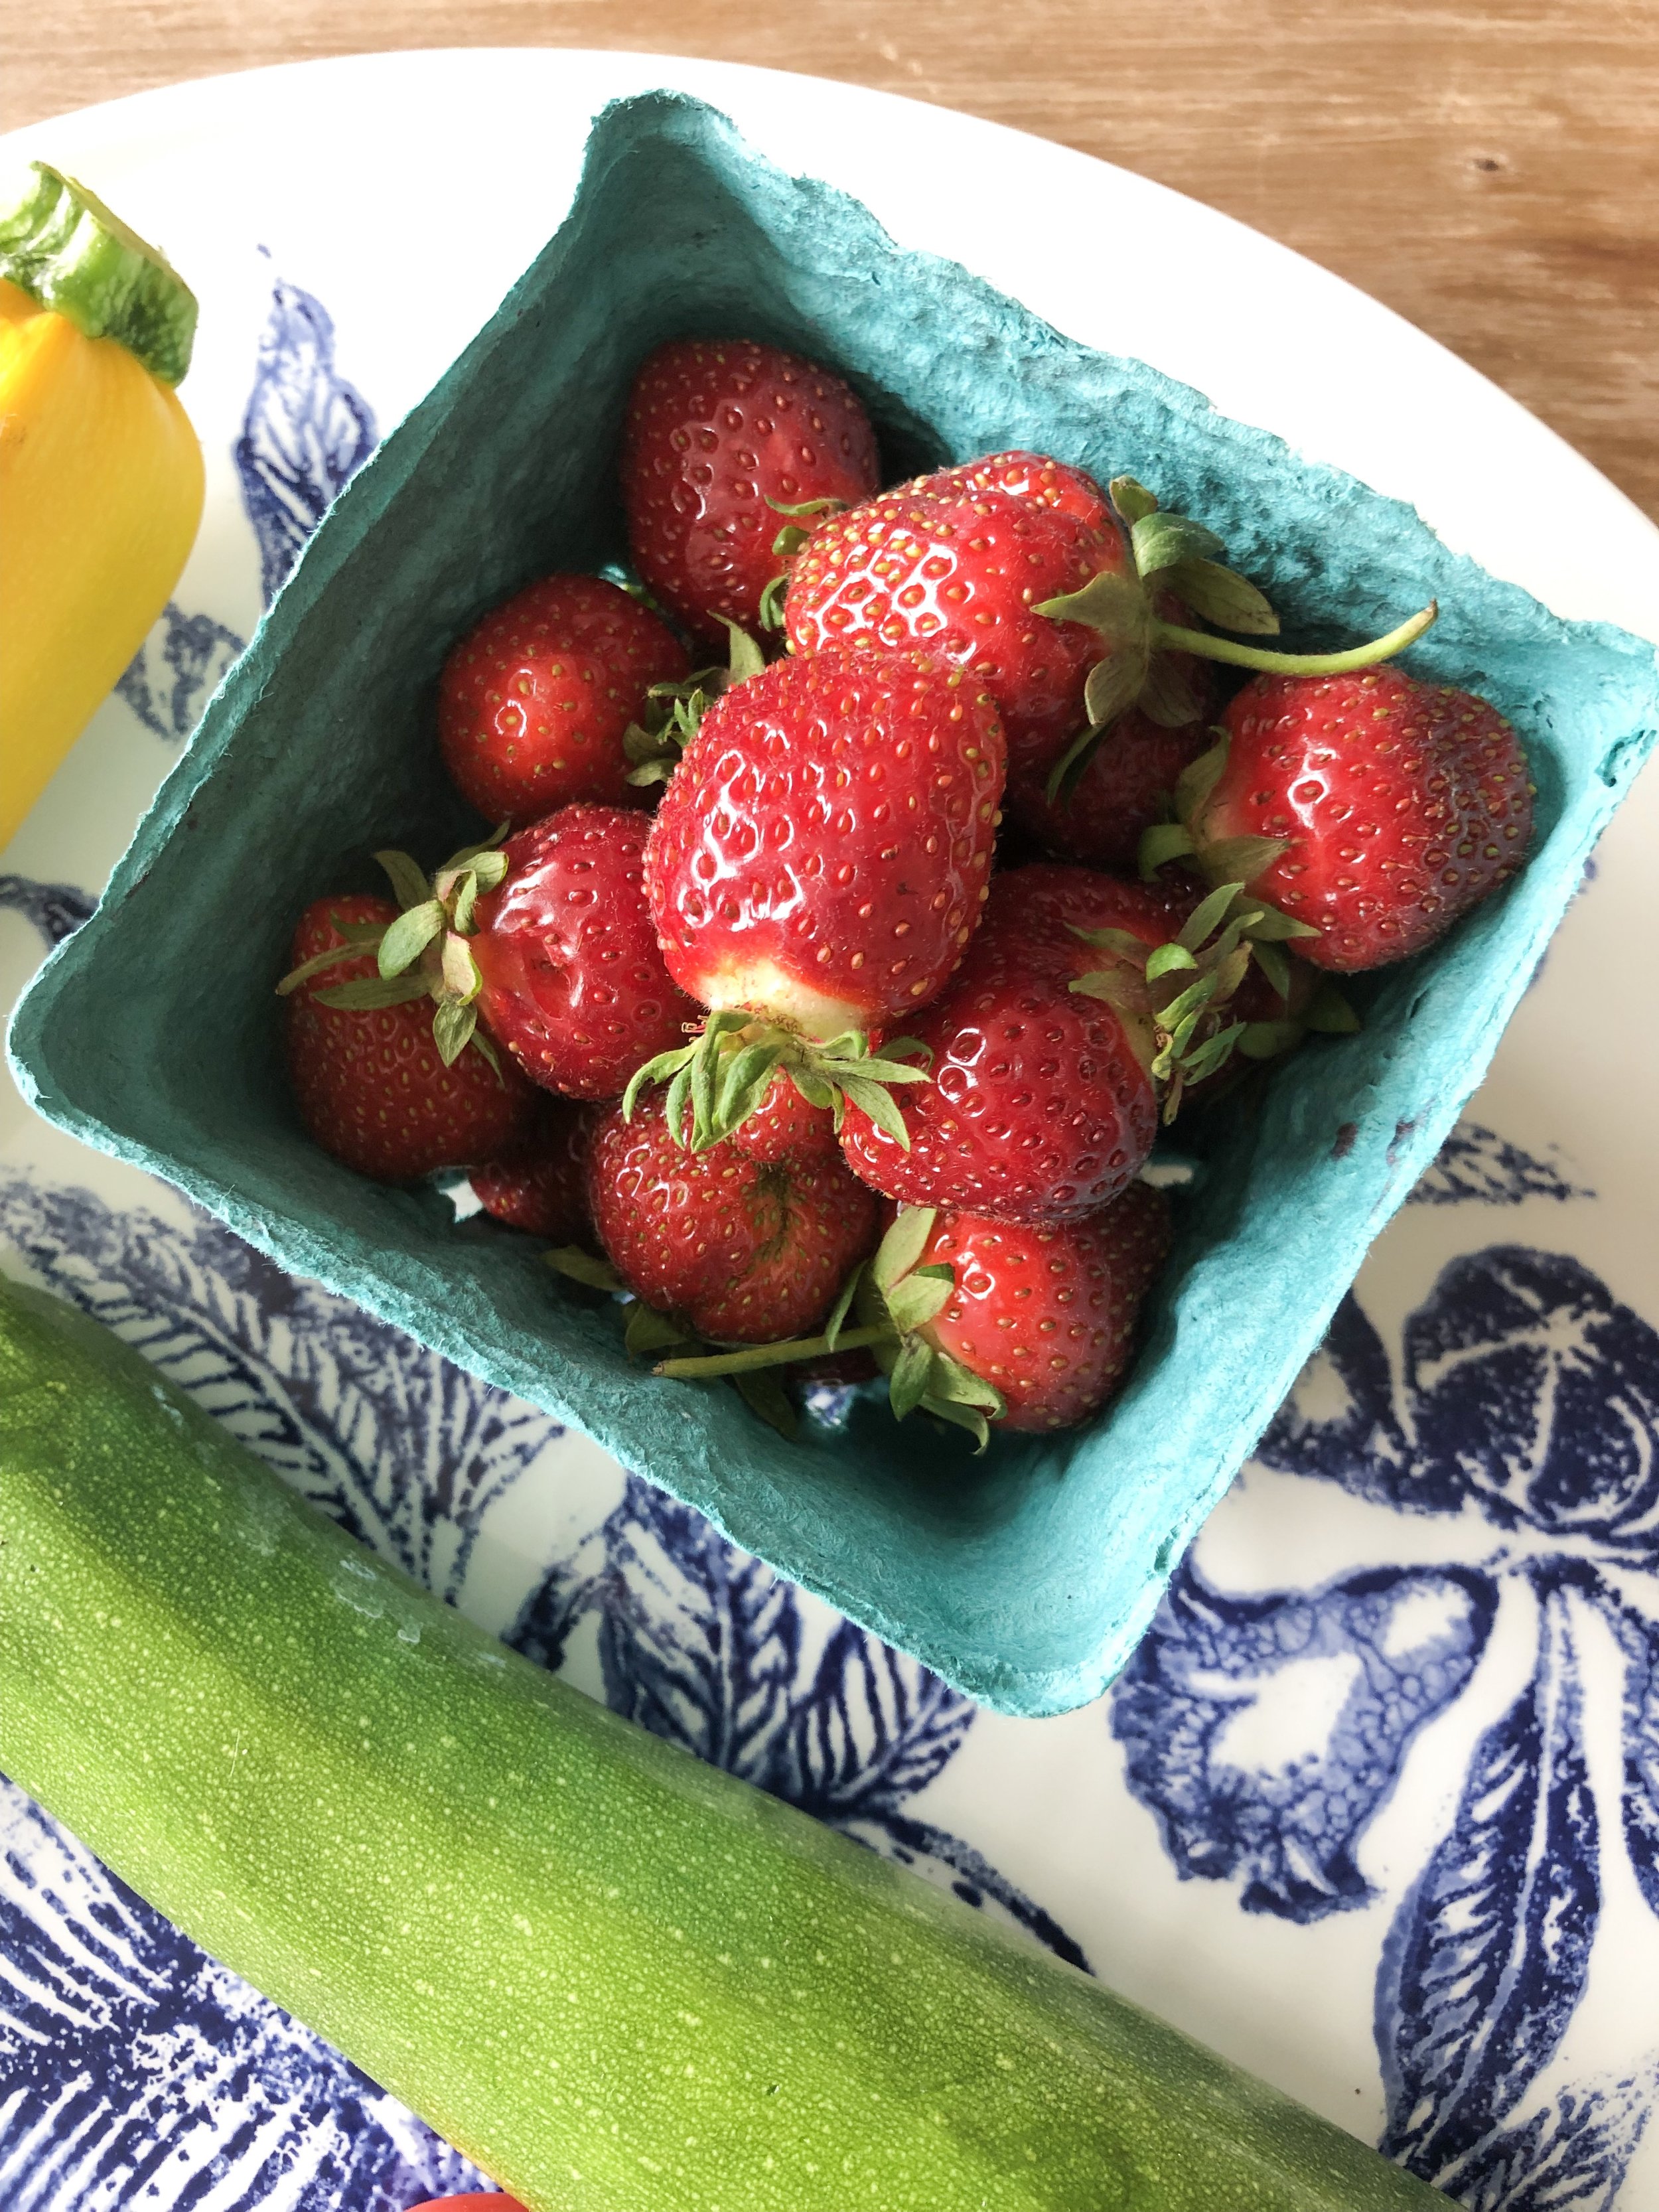 Strawberries on plate.jpg